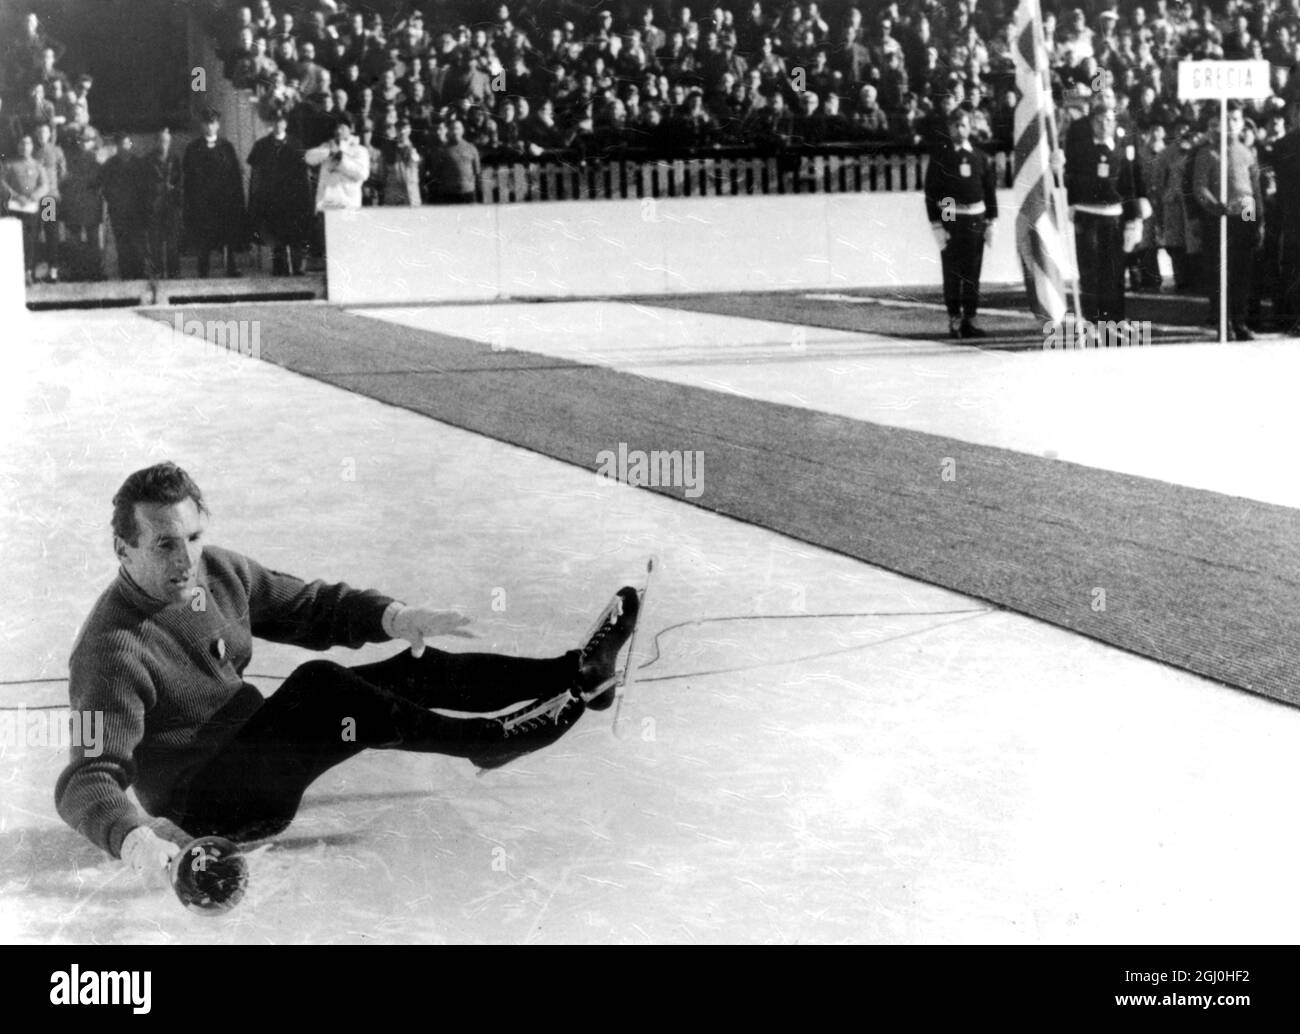 Olympische Winterspiele 1956 - Cortina d’Ampezzo, Italien 13,000 Menschen und 1,200 Teilnehmer keuchte überrascht, als der Träger der olympischen Fackel während der Eröffnungsfeier der Olympischen Winterspiele in den Stand stürzte. Die Fackel, ein Symbol der höchsten Amateurtradition, wurde von Guido Catolli getragen, als er in der letzten Runde um die Eisbahn lief, er einen Mikrofondraht auf dem Eis nicht sah und darüber stürzte. Er hielt die Fackel fest in der Hand und beendete die Ehrenrunde vor einem ultrastillen Publikum. - Foto zeigt den italienischen Skater Guido Catolli Stockfoto